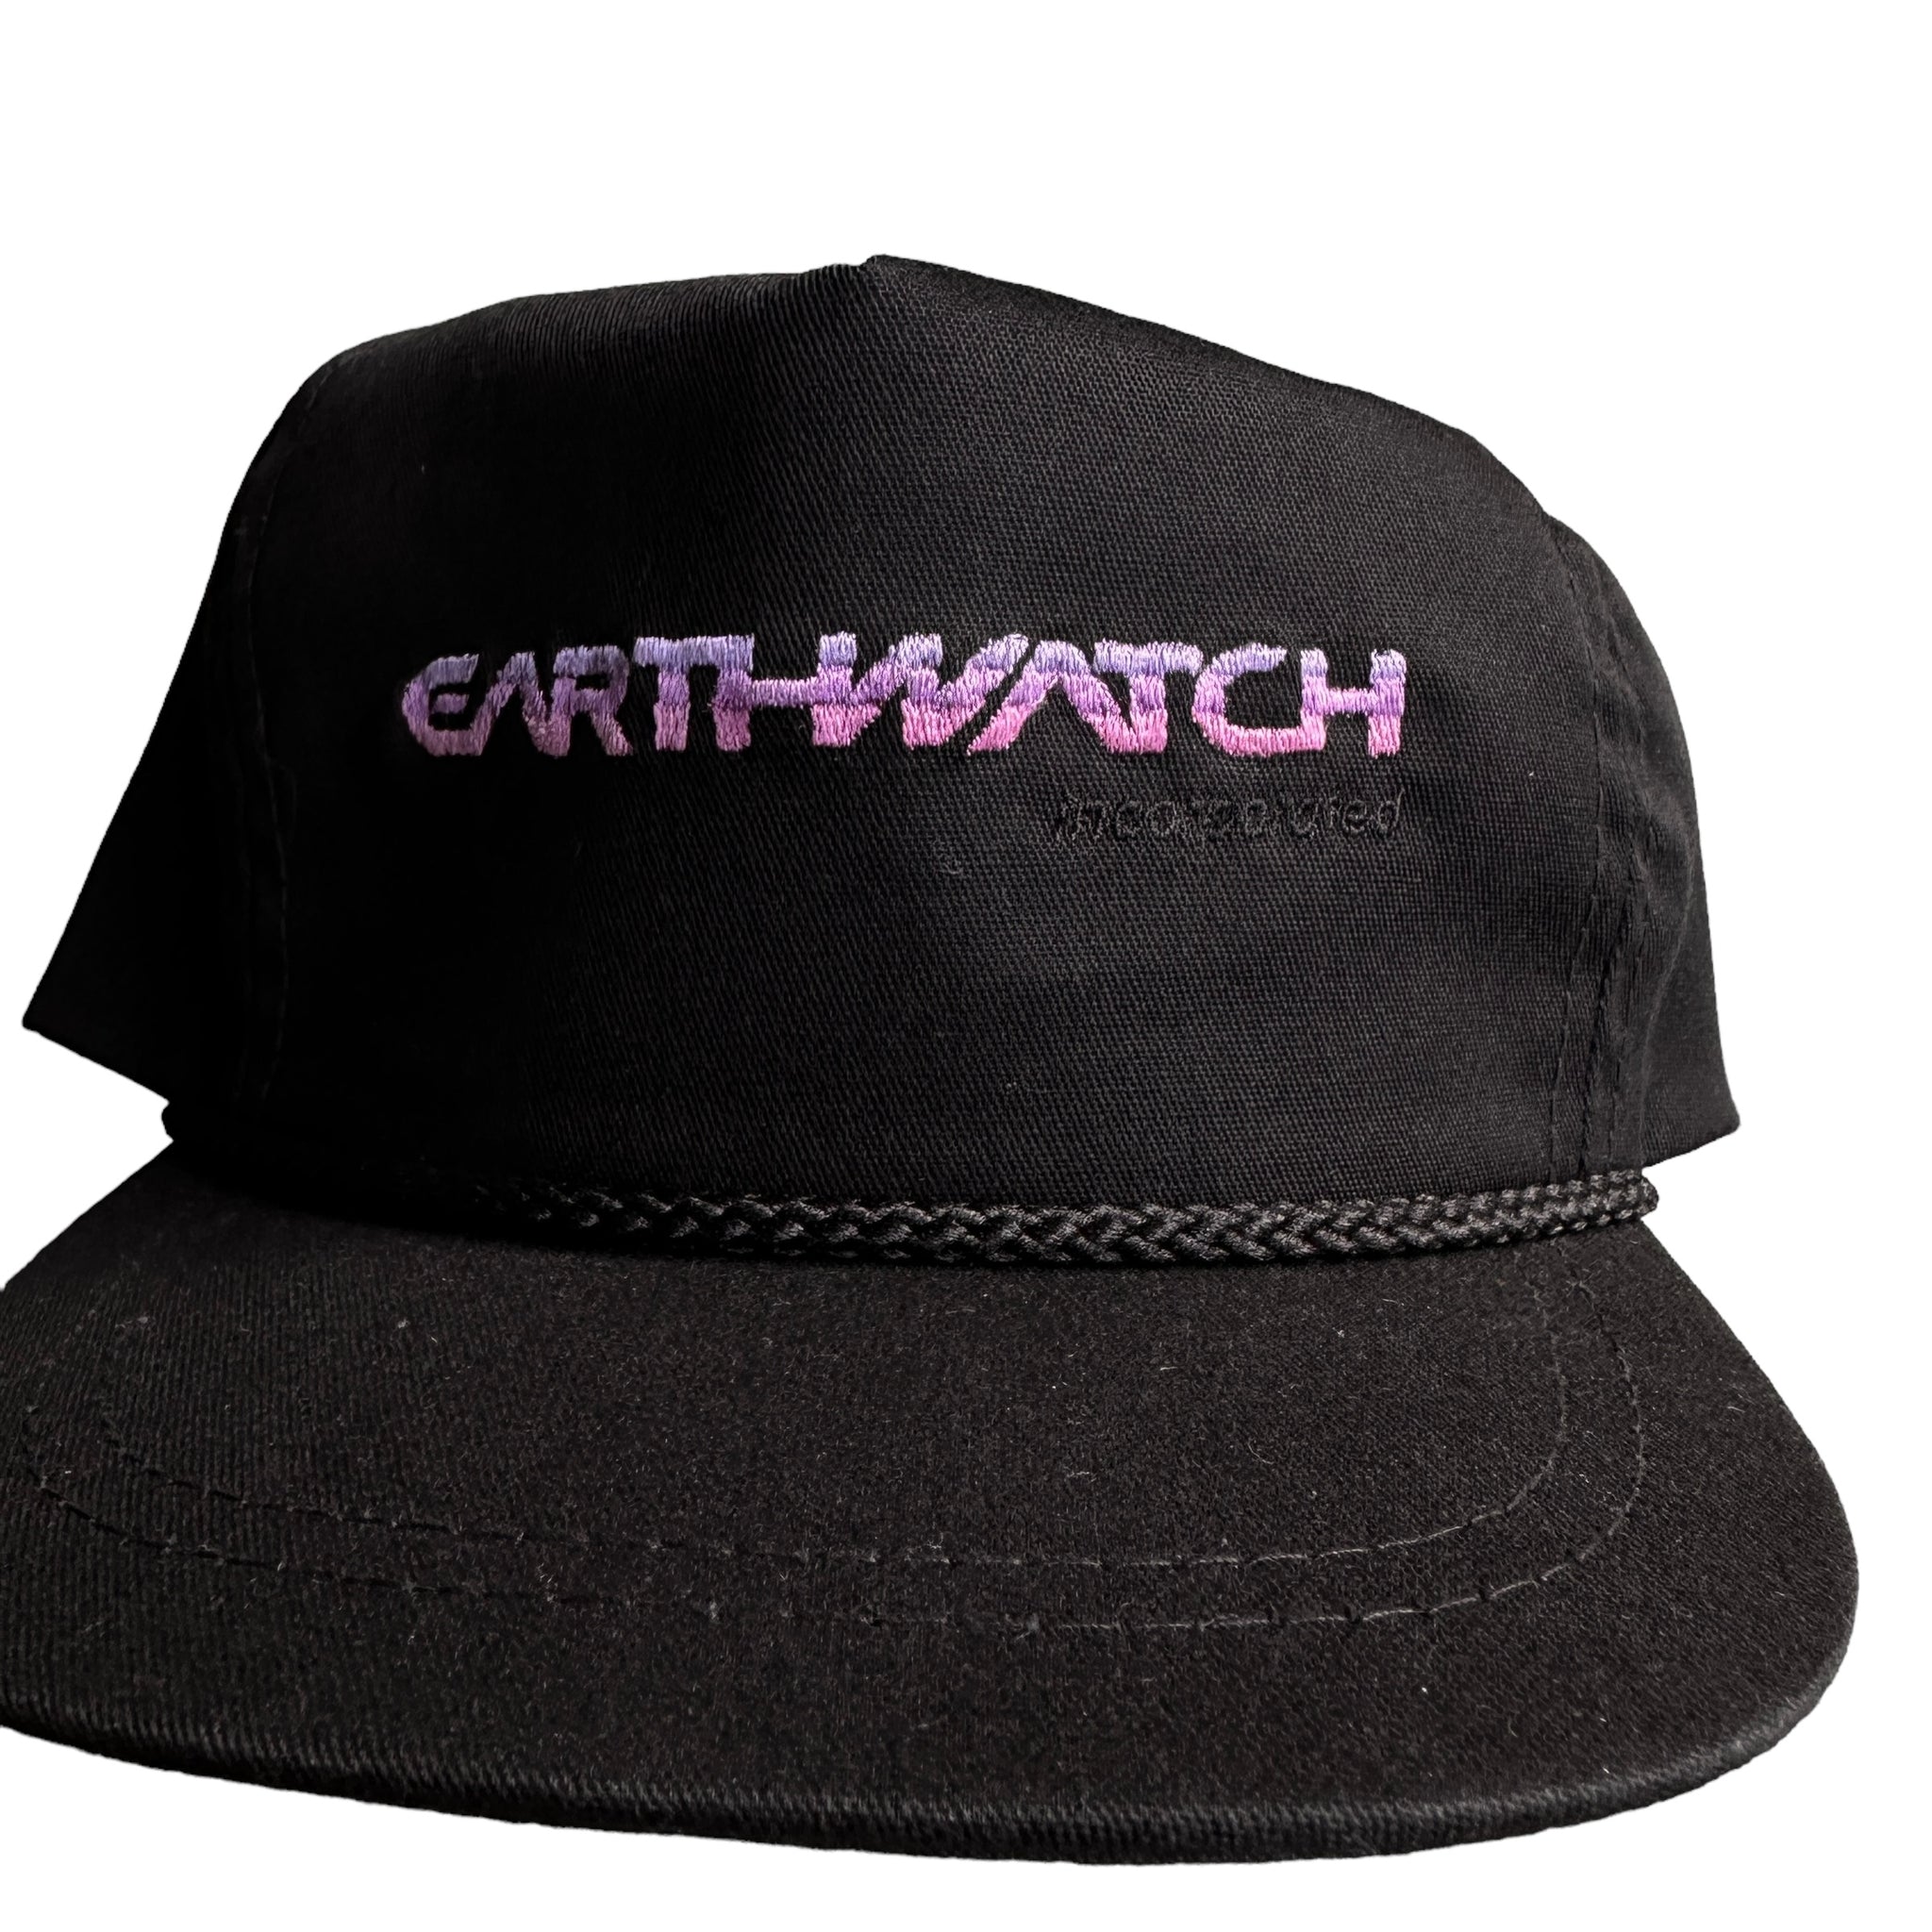 Earthwatch hat